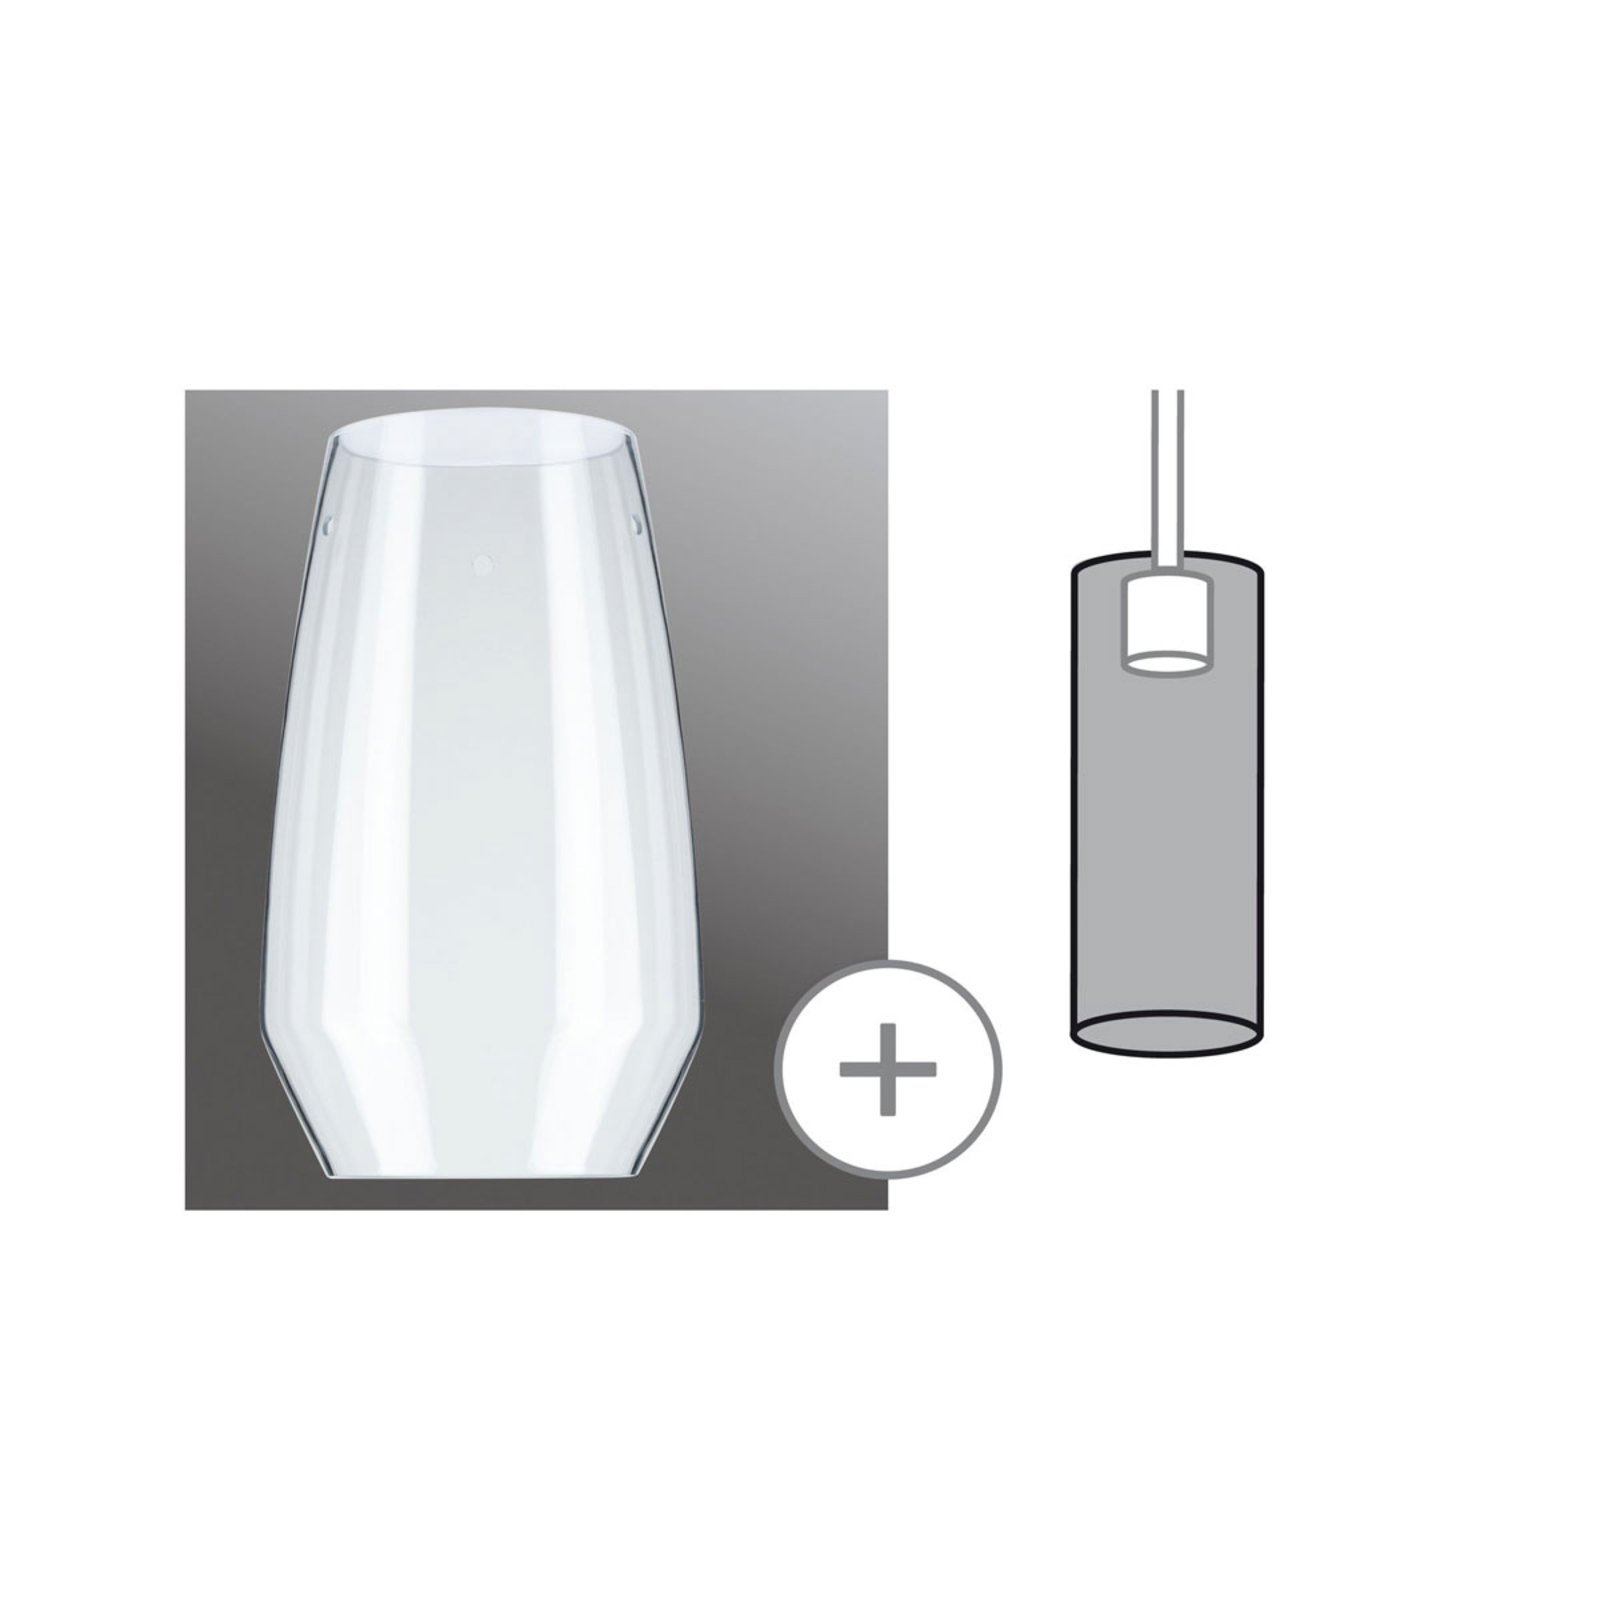 Paulmann Vento lampshade, clear, Ø 17 cm, glass